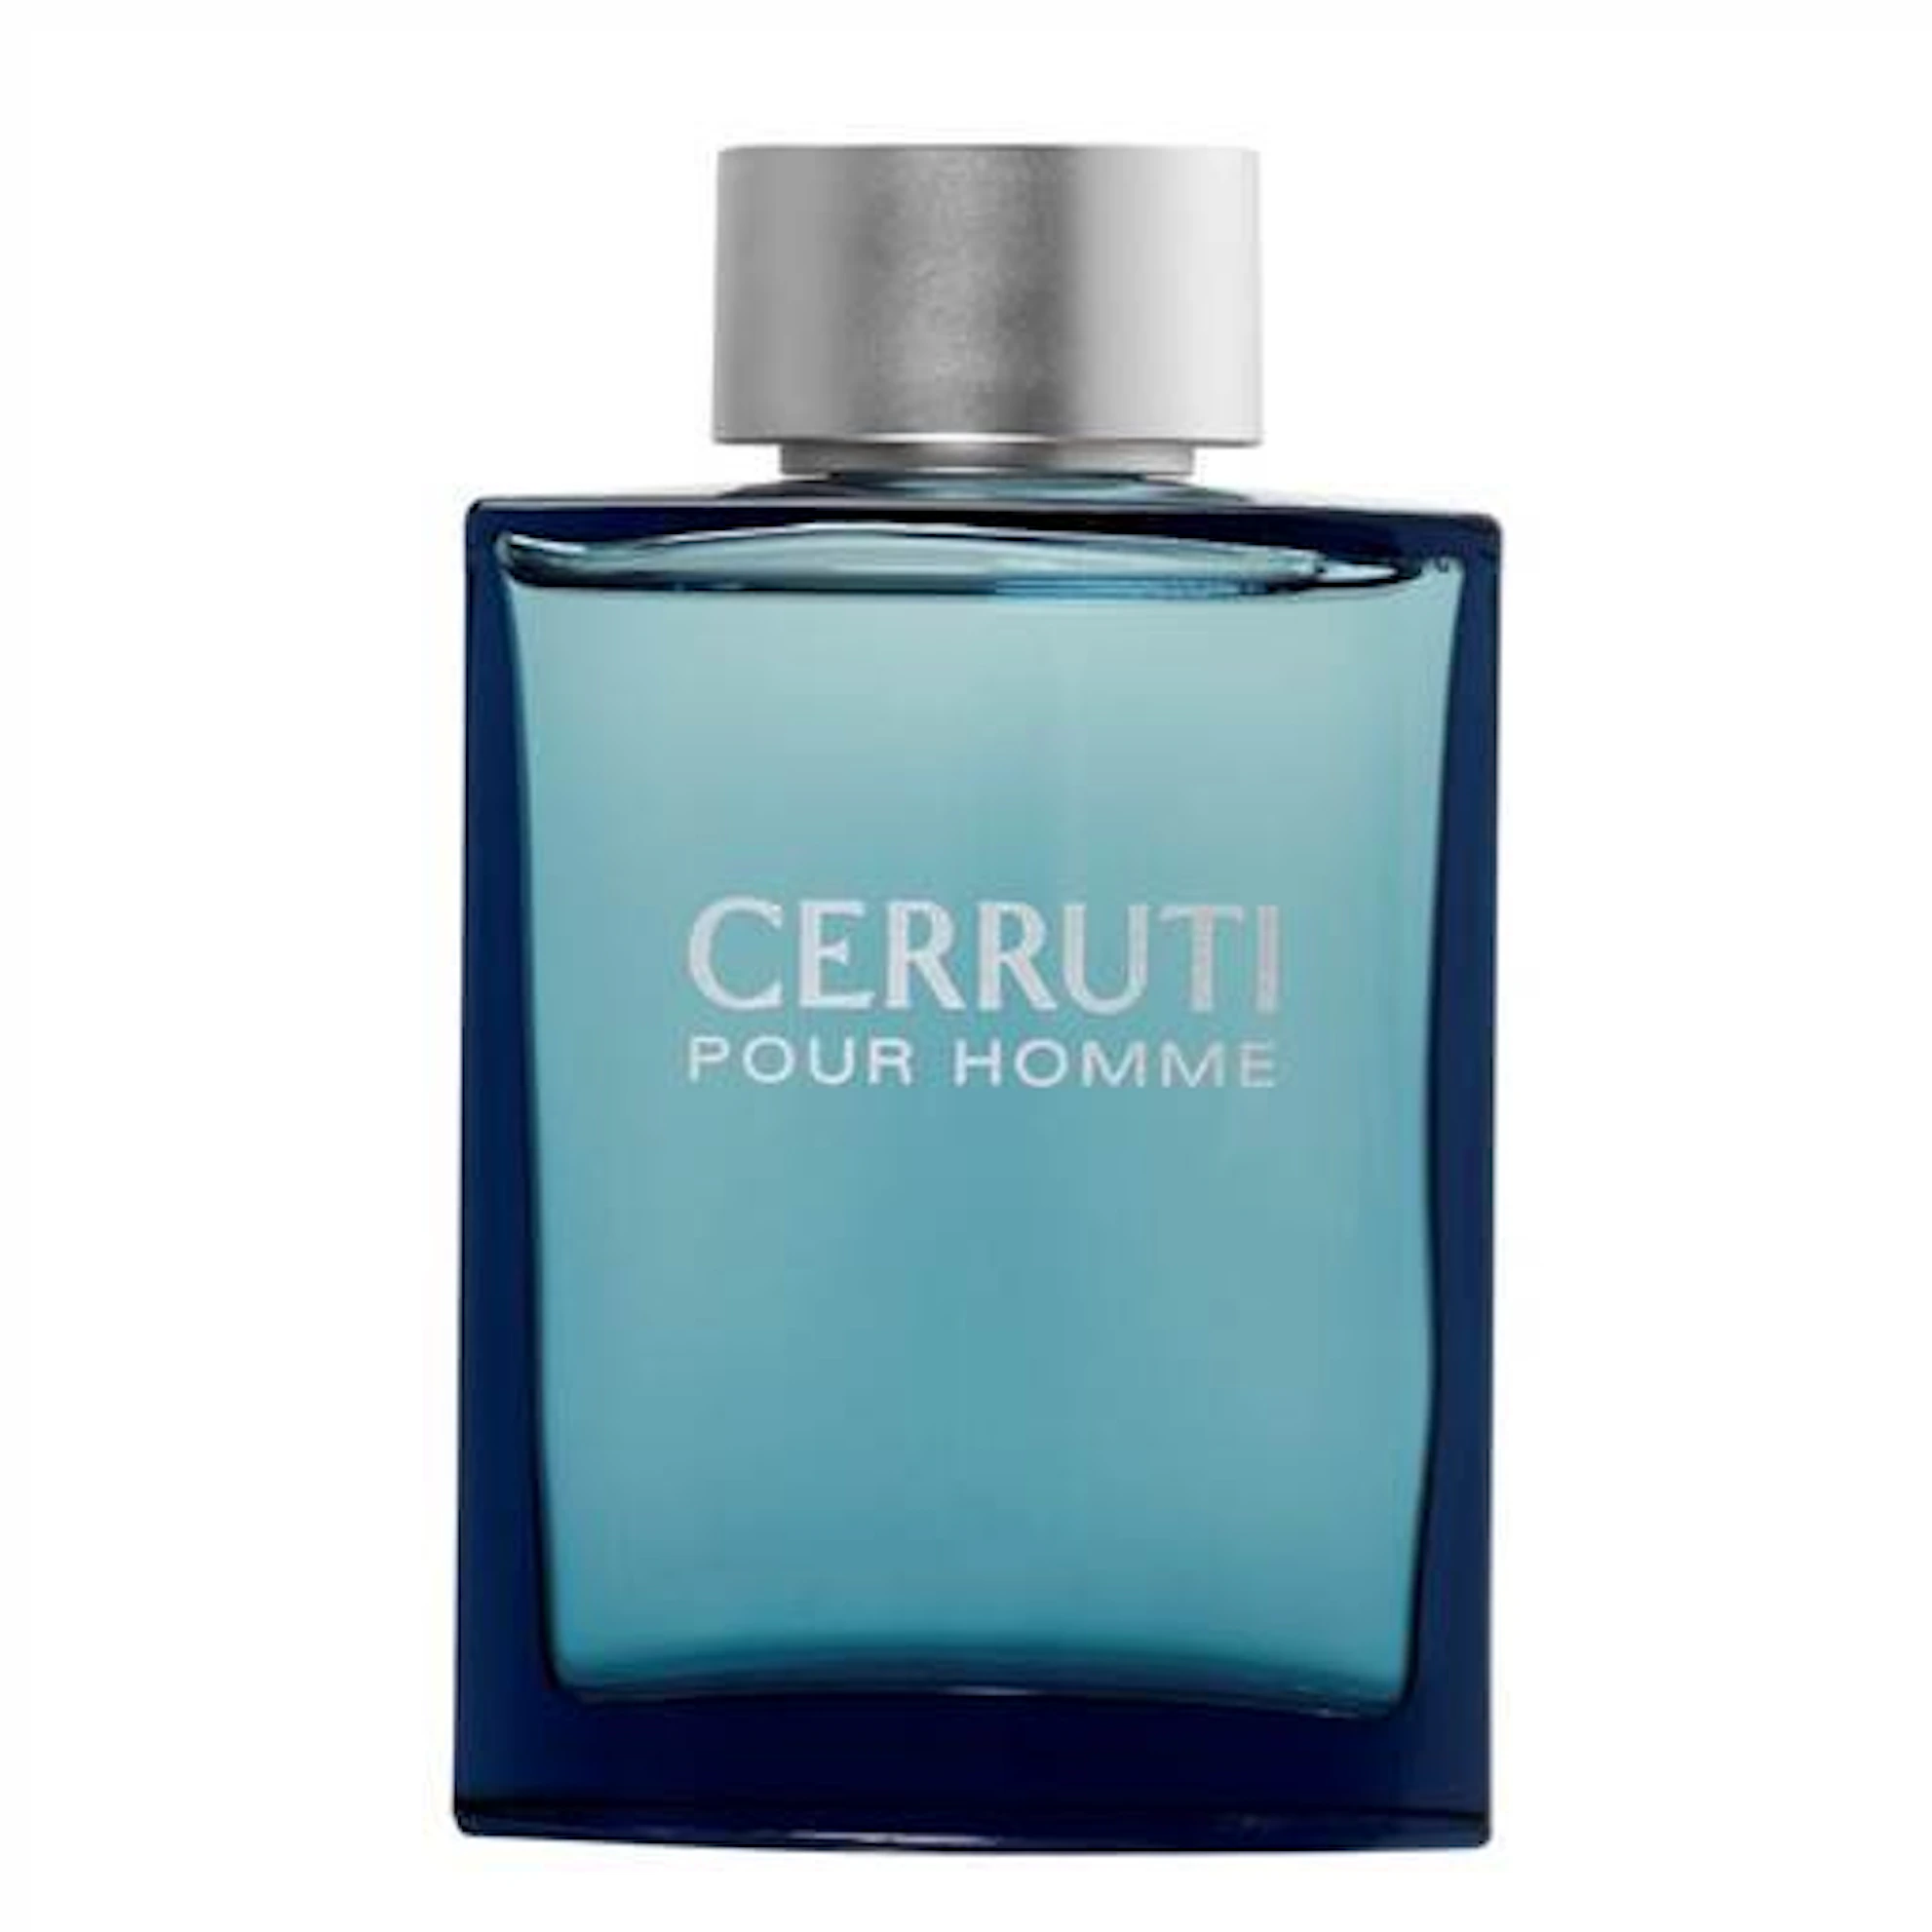 Cerruti Eau De Toilette 50ml Spray | The Fragrance Shop